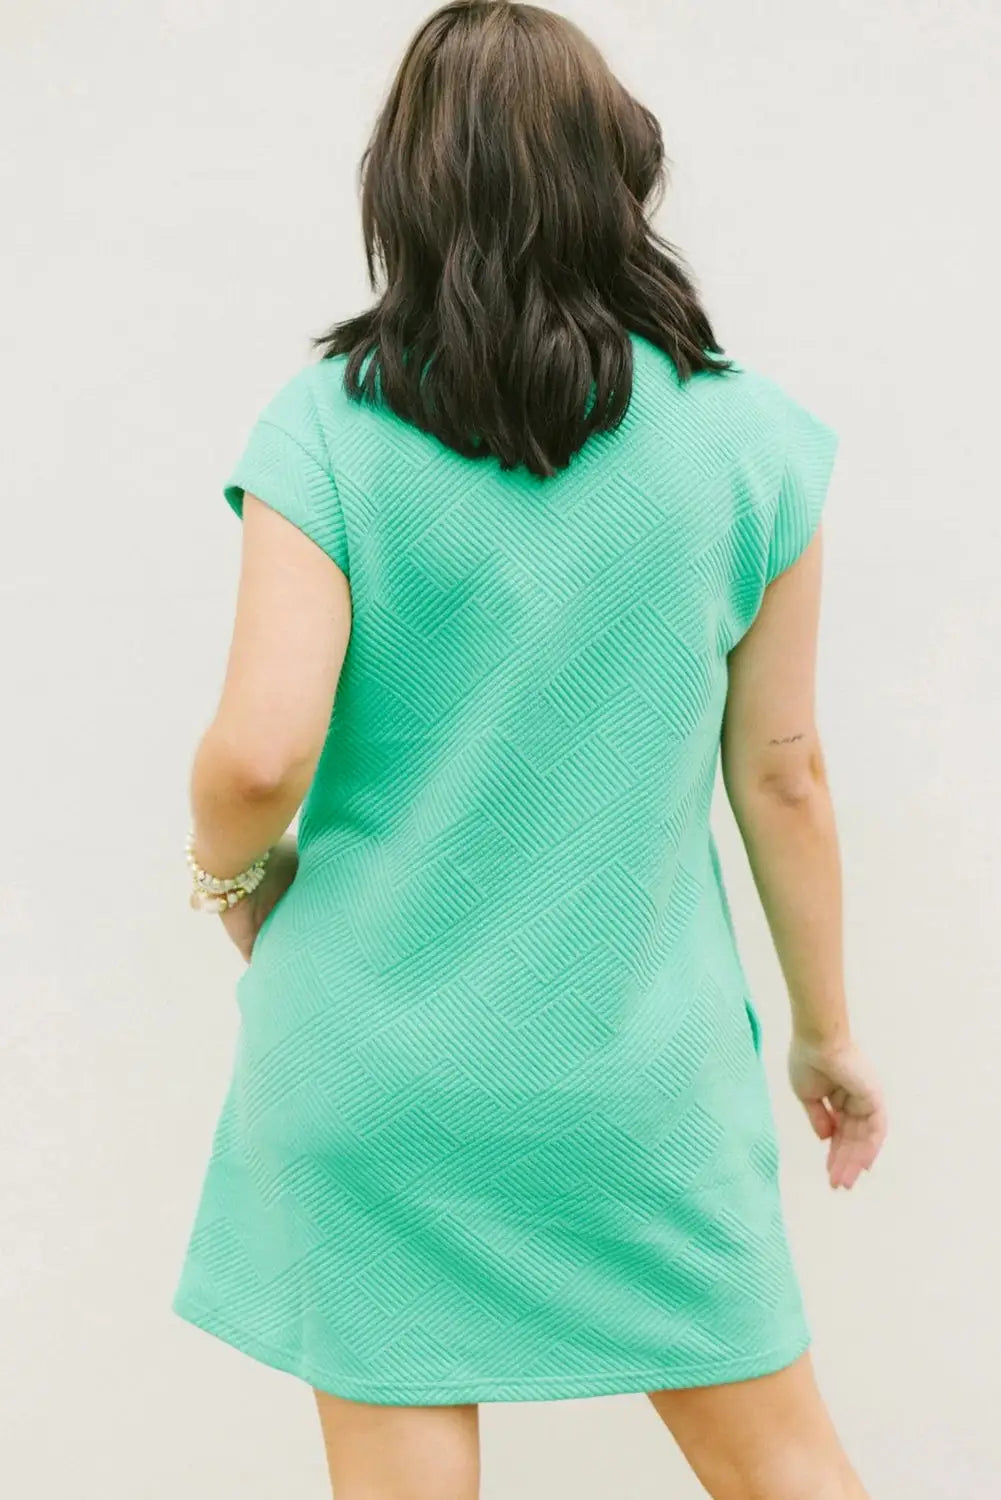 Textured t-shirt dress - mint green cap sleeve - t shirt dresses